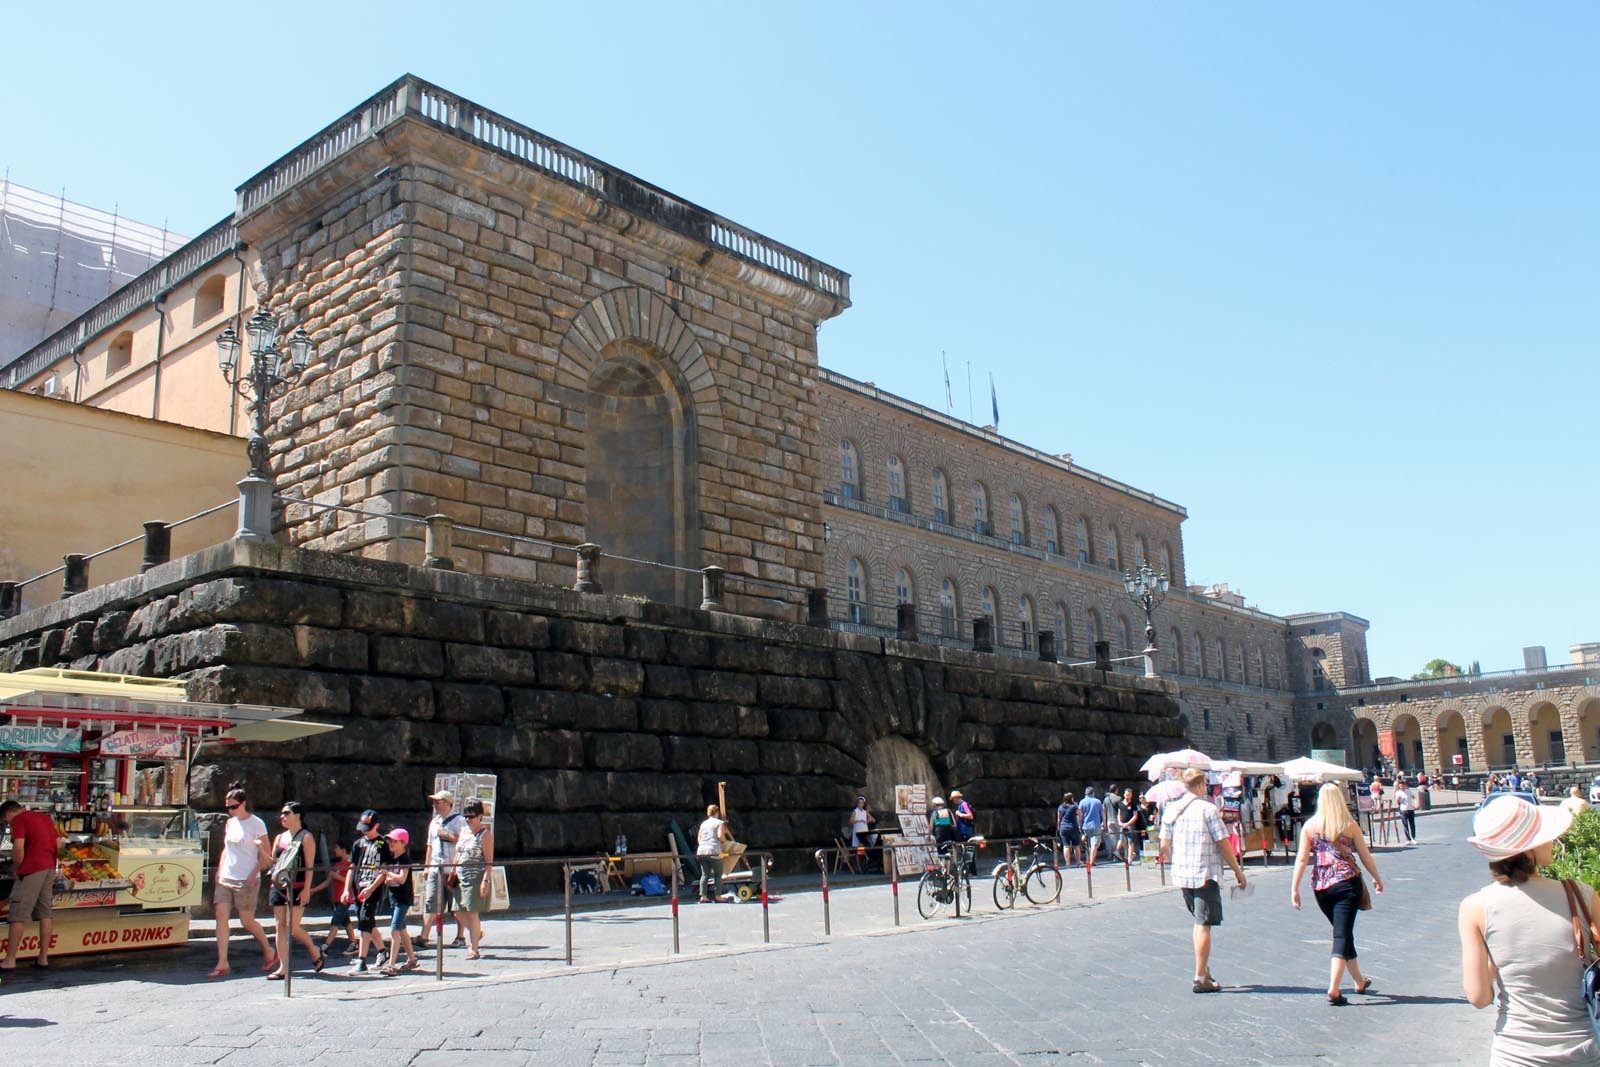 Palazzo Pitti - fara legatura cu Piteştiul...